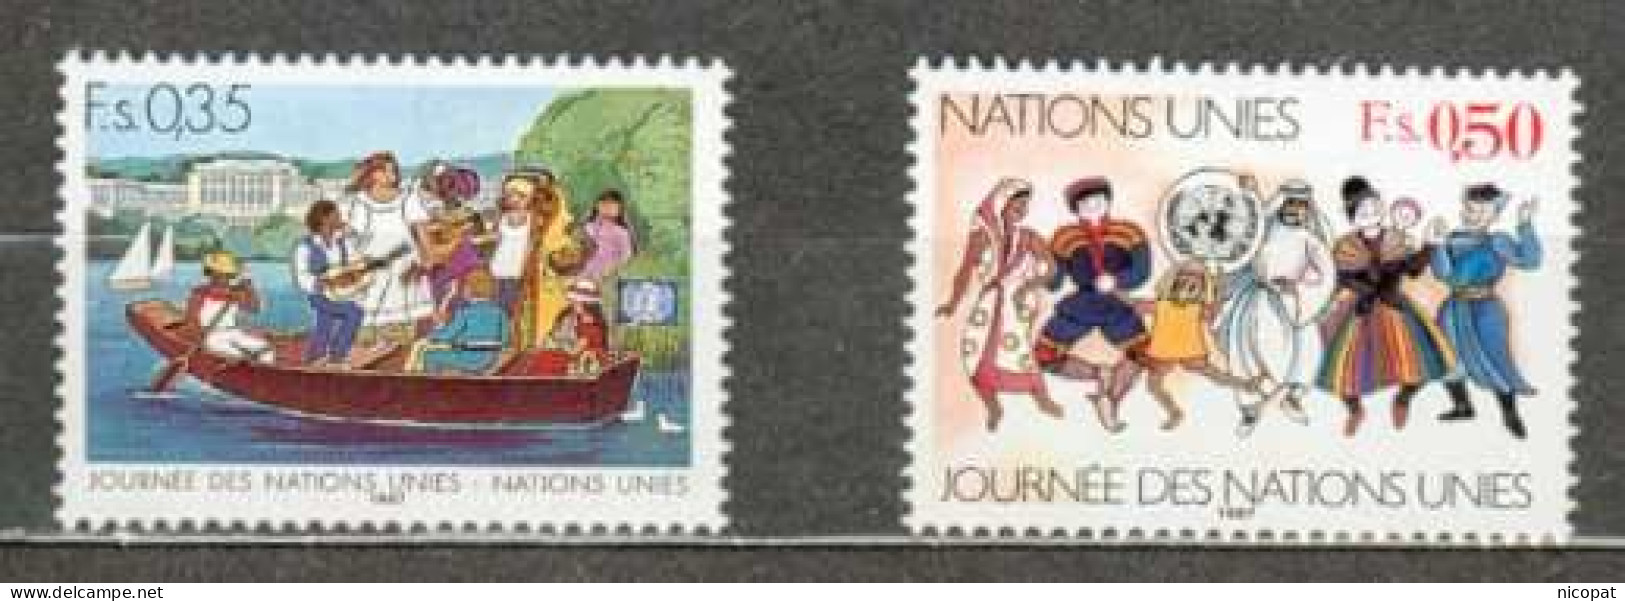 ONU GENEVE MNH ** 158-159 Journée Des Nations Unies Barque Sur Un Lac Costumes Nationaux Folklore - Nuovi